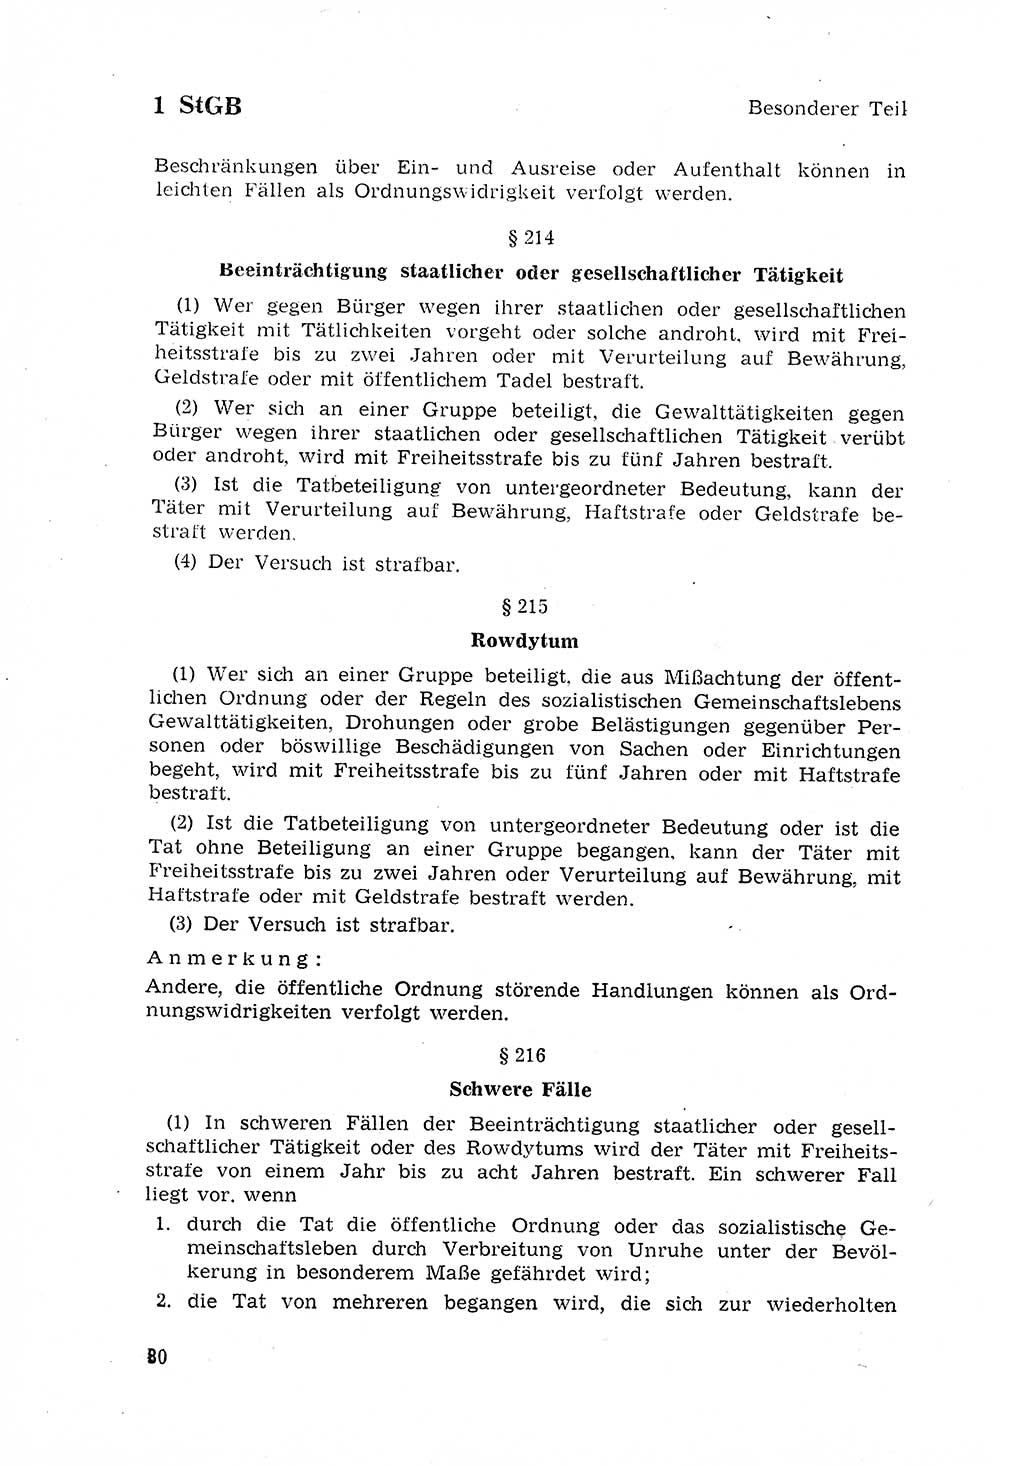 Strafgesetzbuch (StGB) der Deutschen Demokratischen Republik (DDR) 1968, Seite 80 (StGB DDR 1968, S. 80)